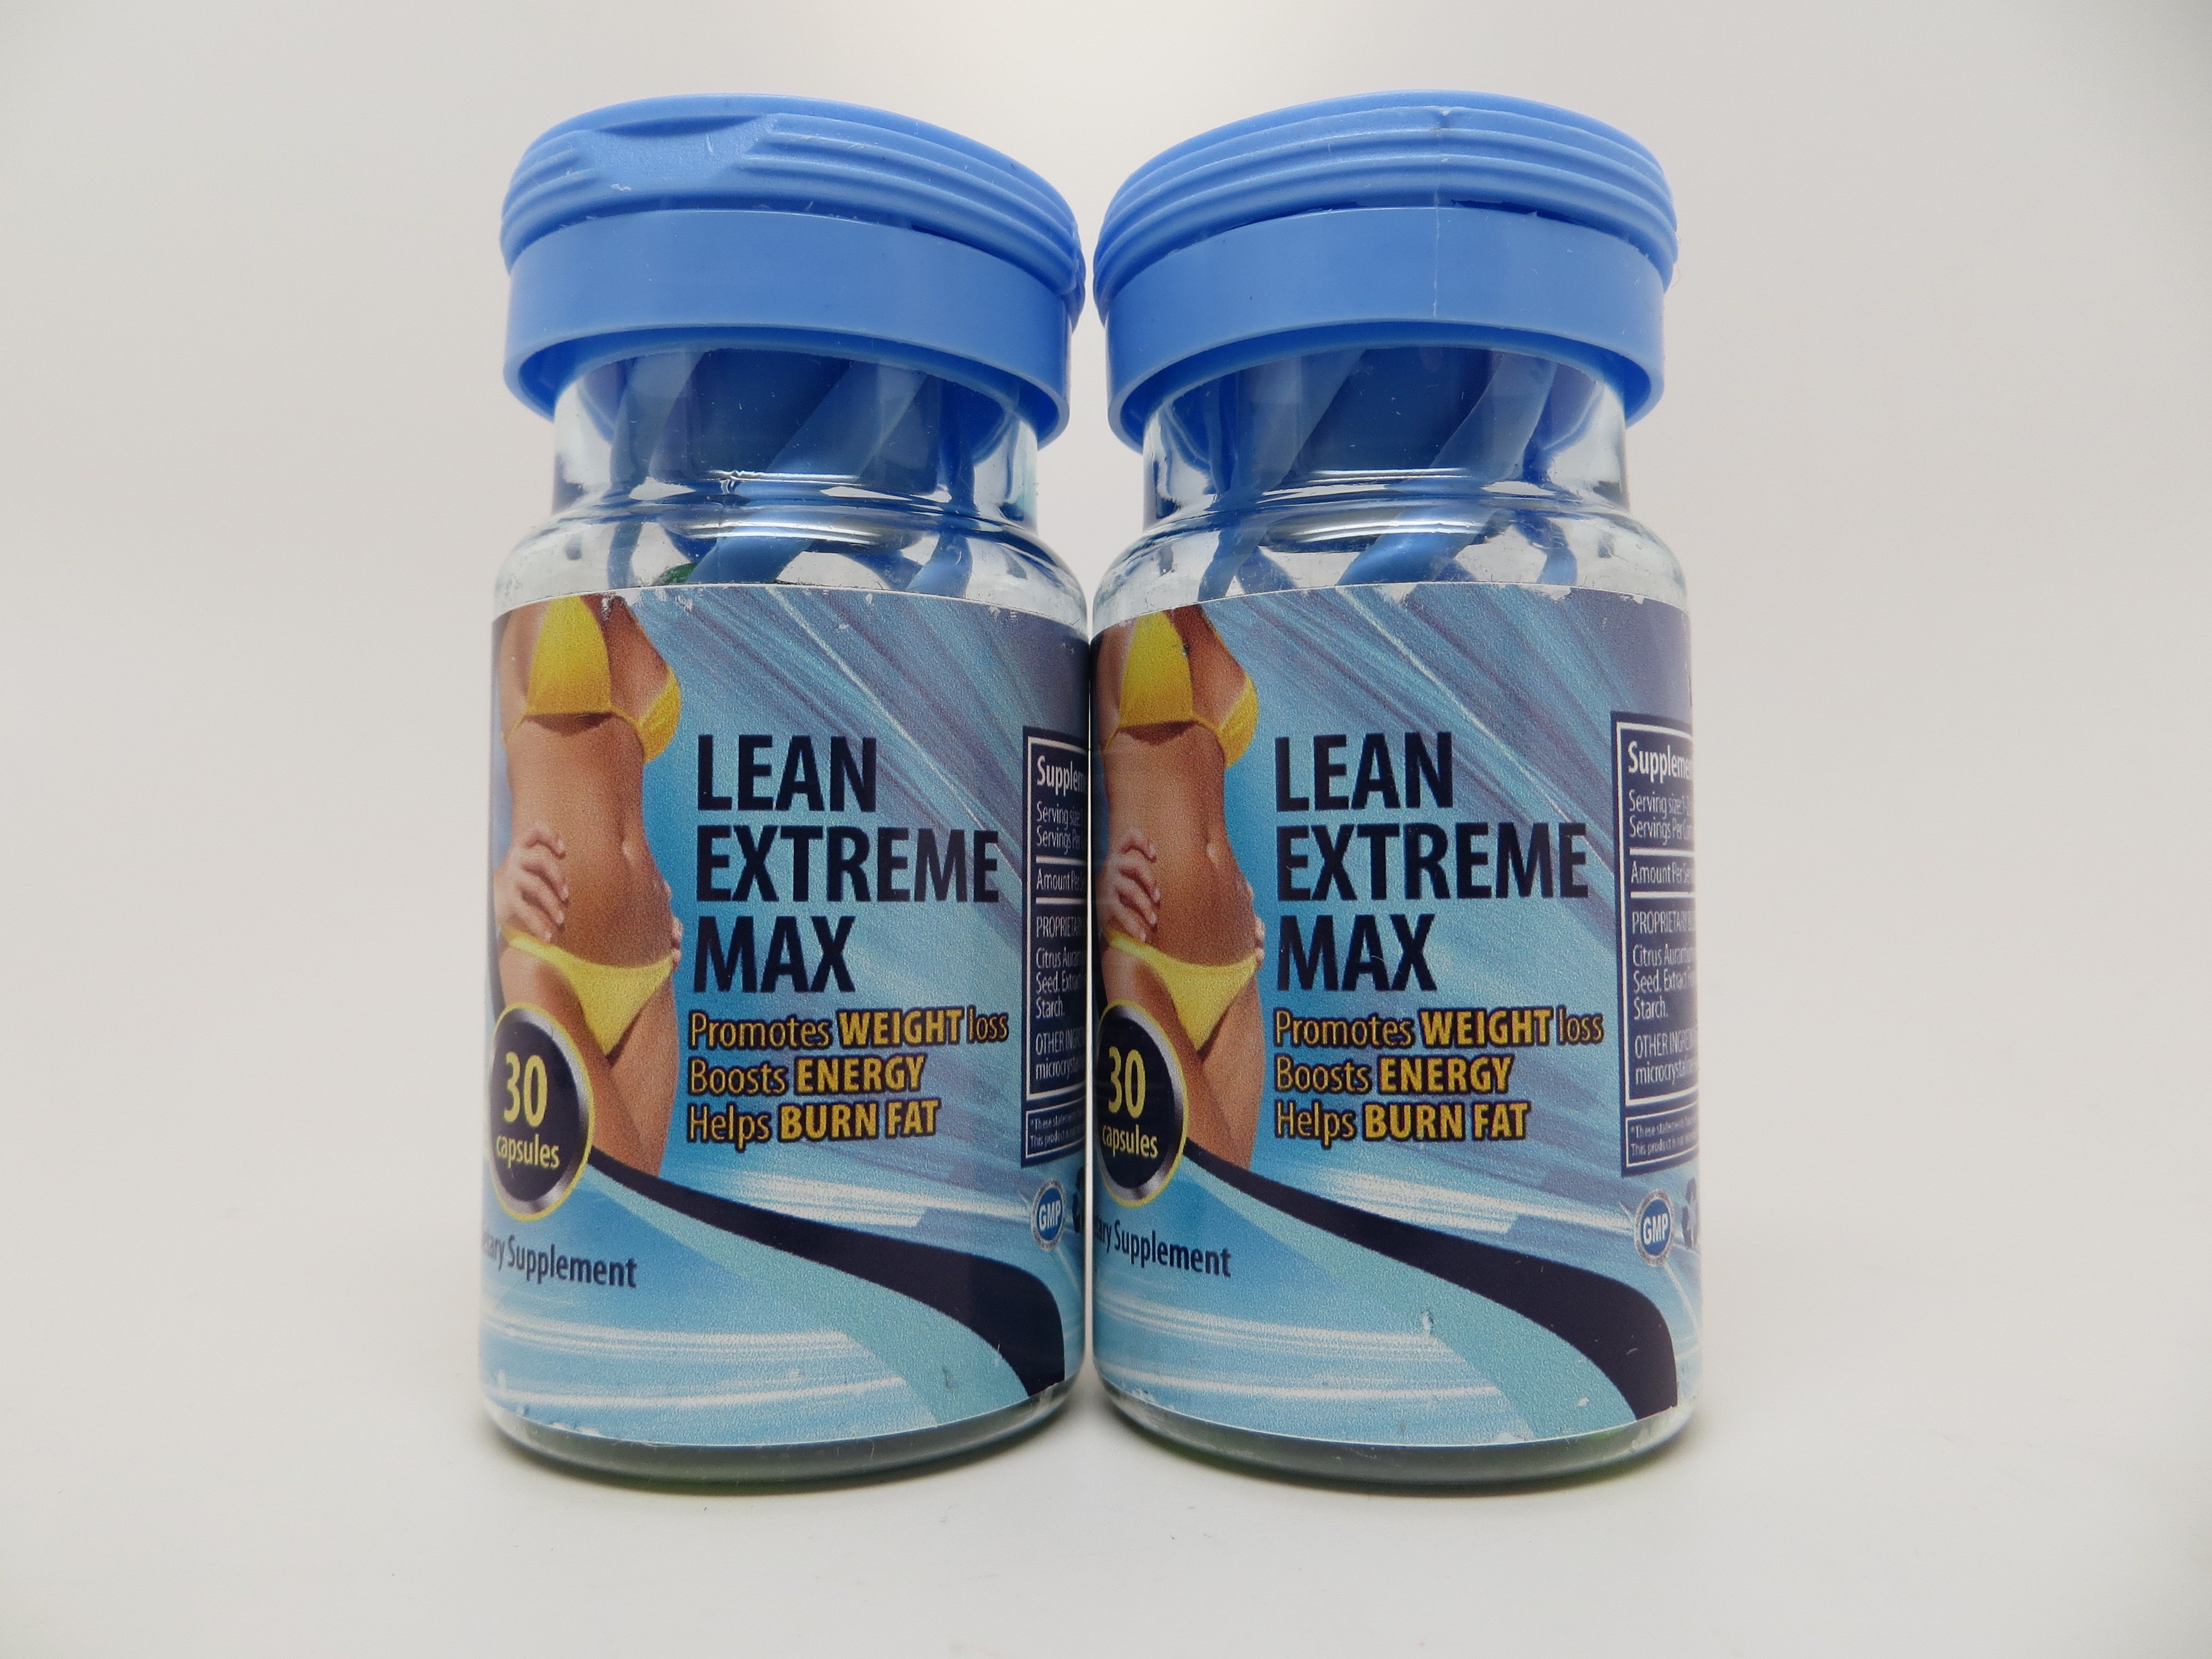 Billede af det ulovlige produkt: Lean Extreme Max